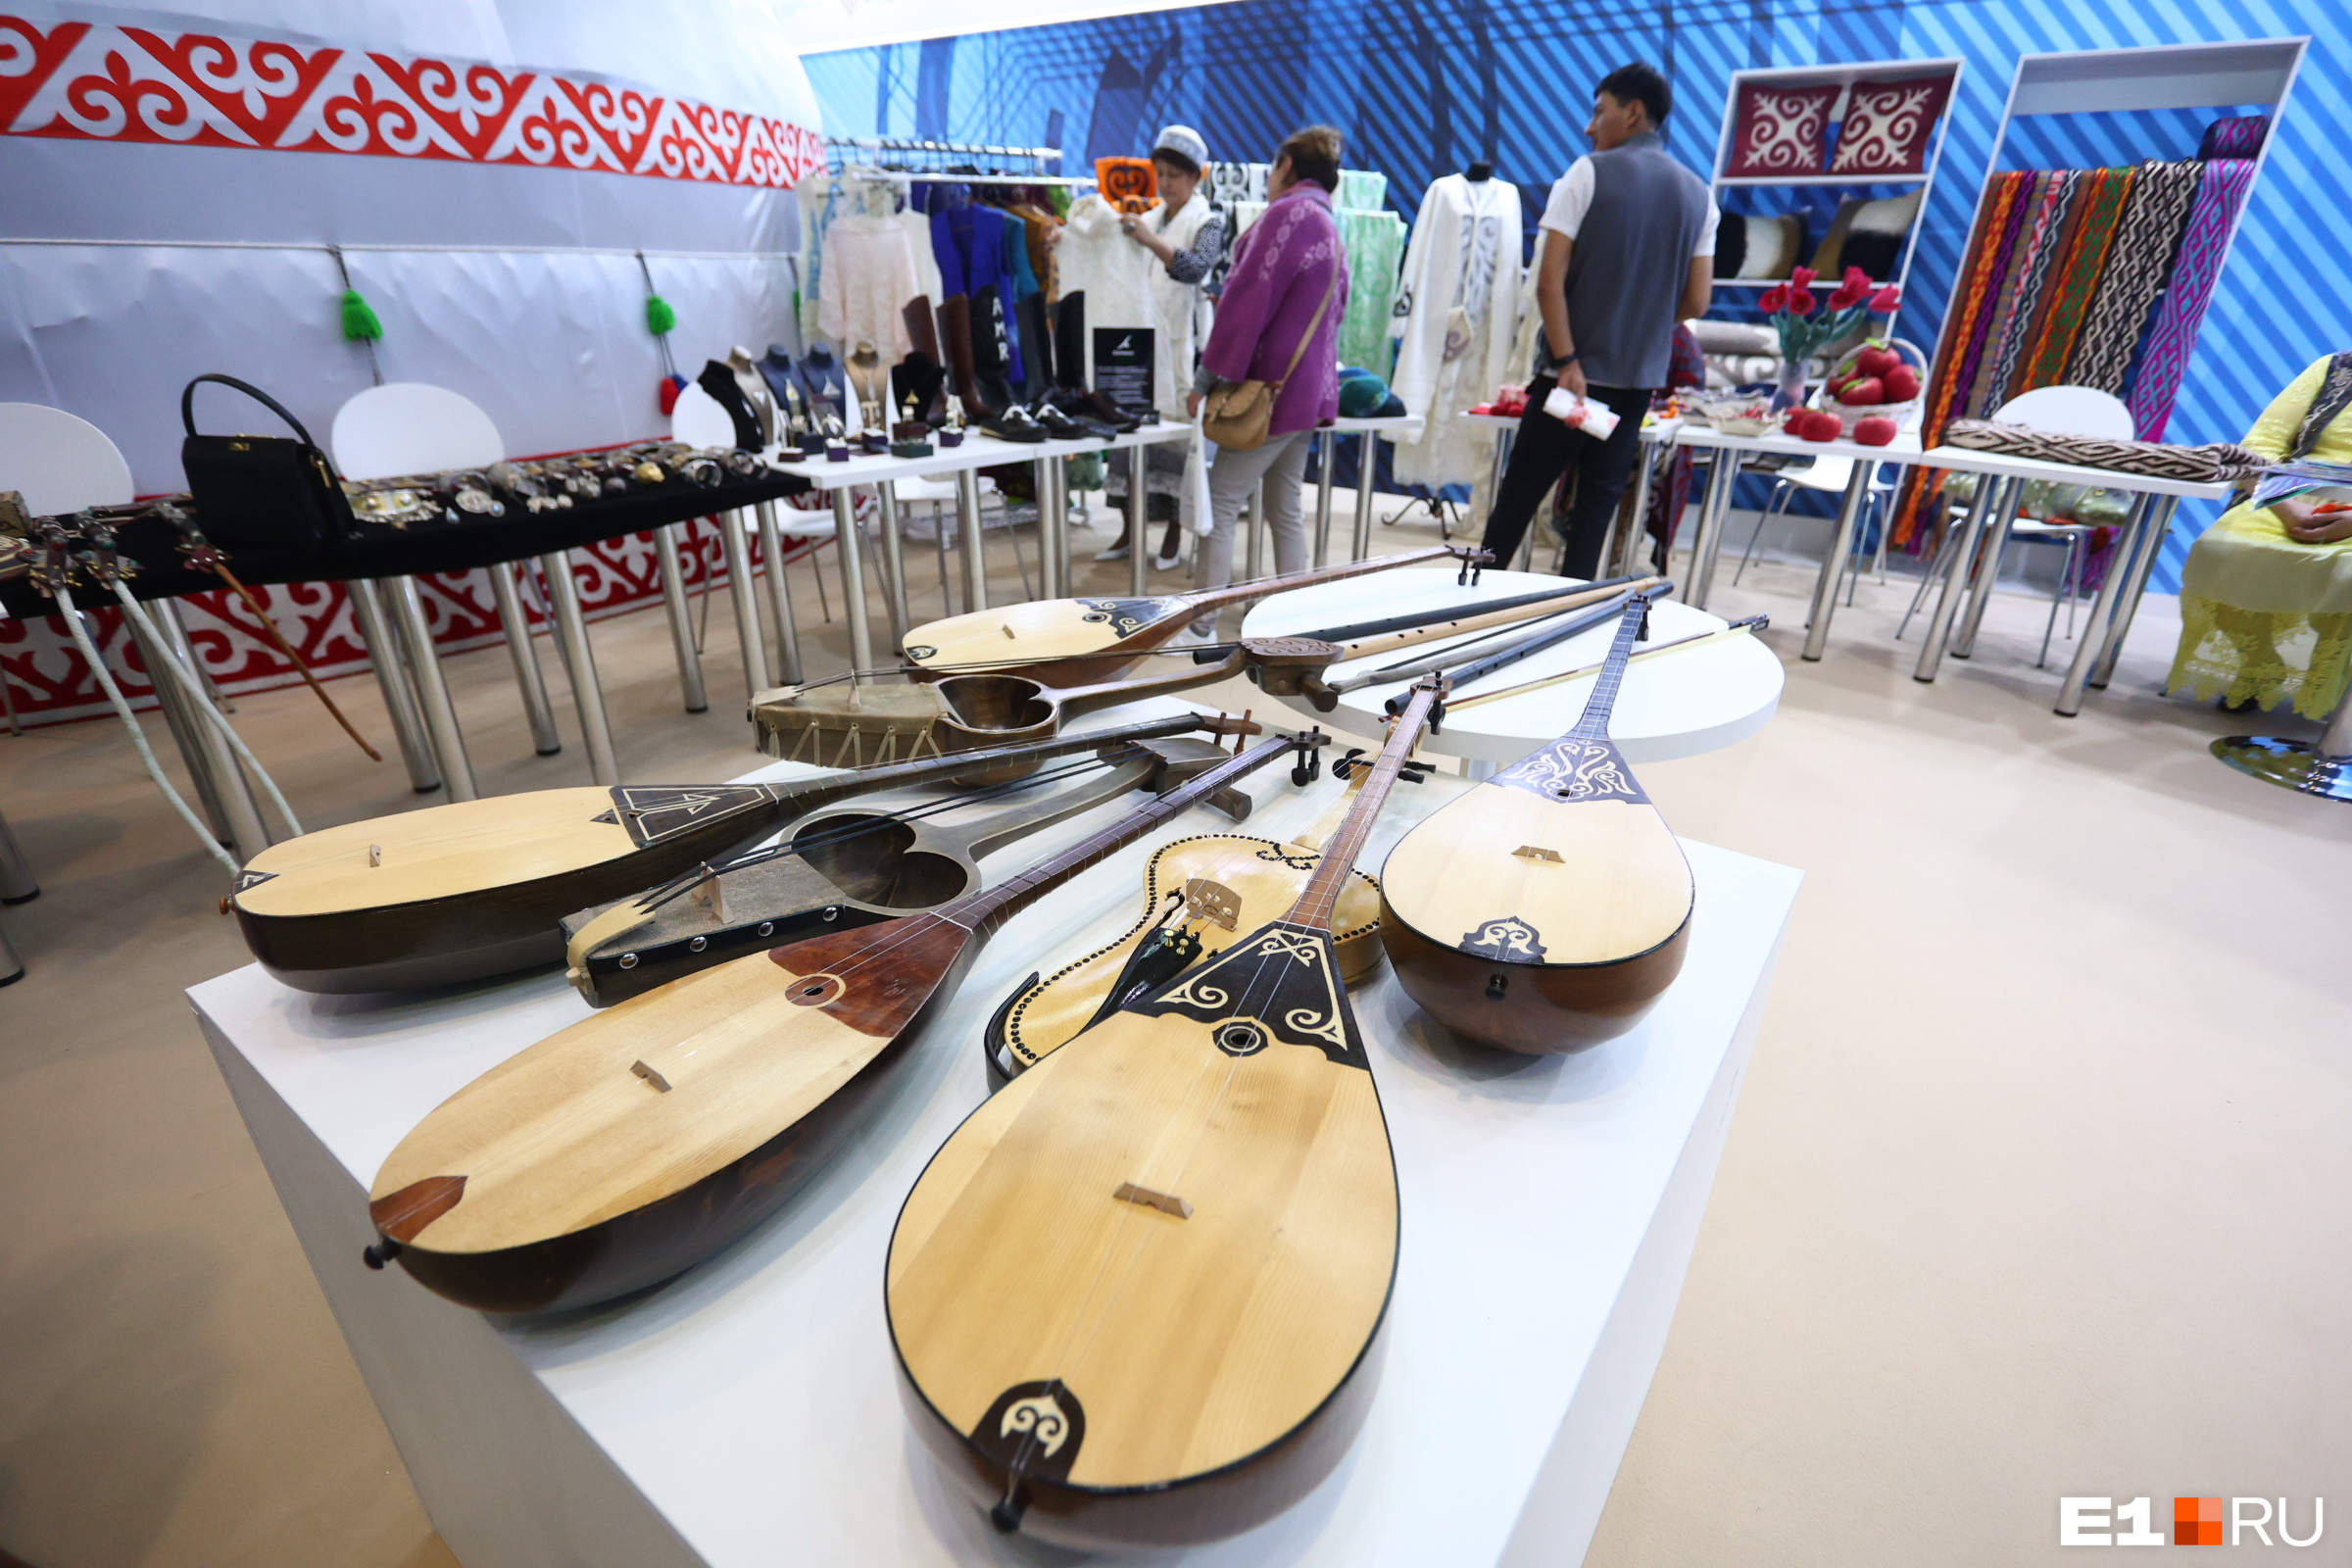 Домбра — национальный казахский инструмент